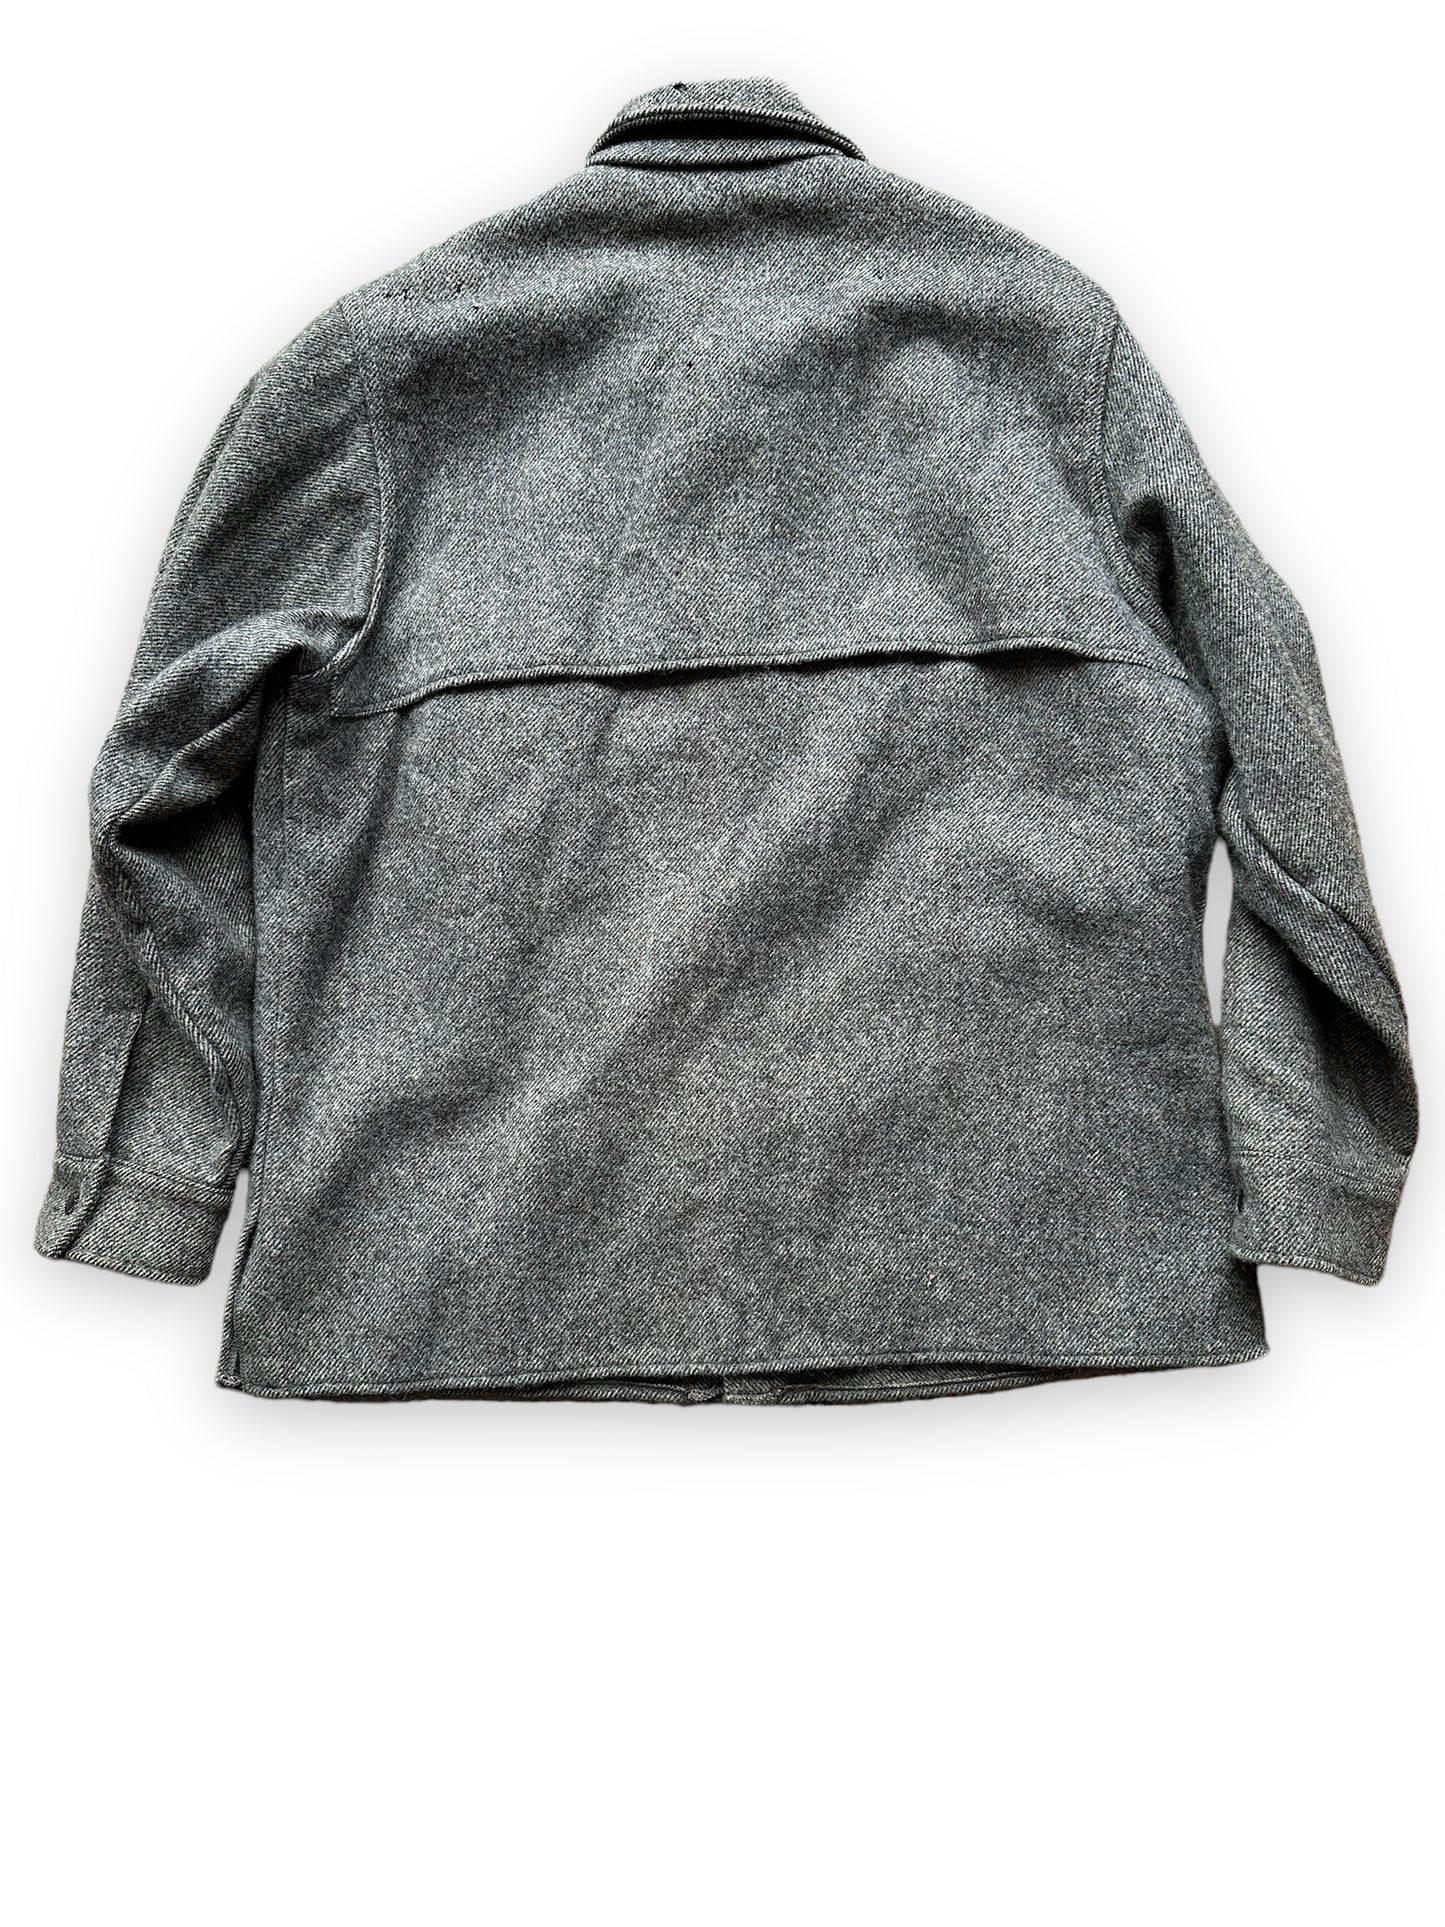 Rear View of Vintage Filson Grey Herringbone Cape Coat SZ Large  |  Barn Owl Vintage Goods | Vintage Wool Workwear Seattle